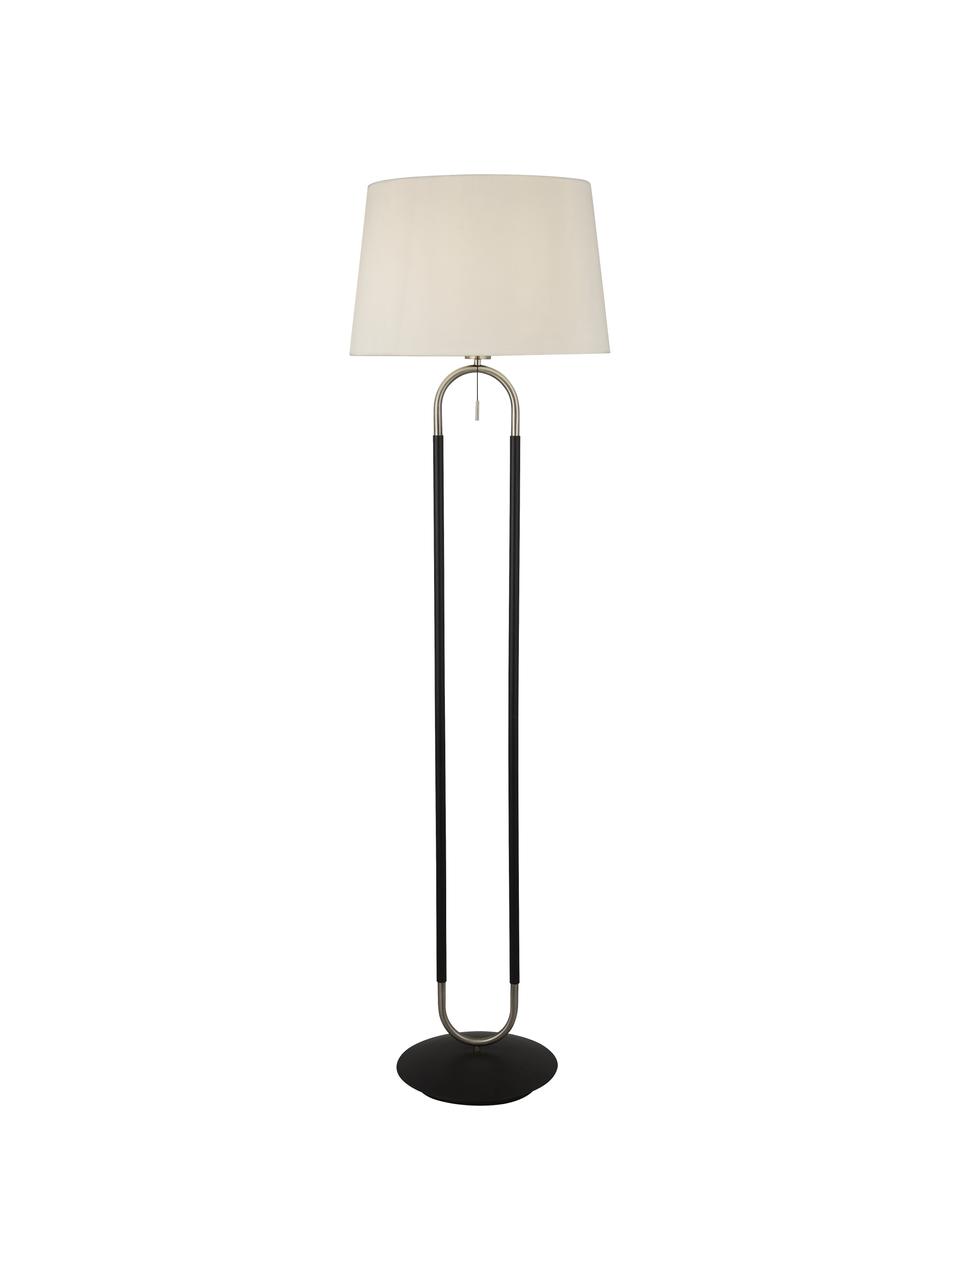 Stehlampe Satina mit Samtschirm, Lampenschirm: Samt, Lampenfuß: Stahl, Weiß, Schwarz, Silberfarben, H 161 cm